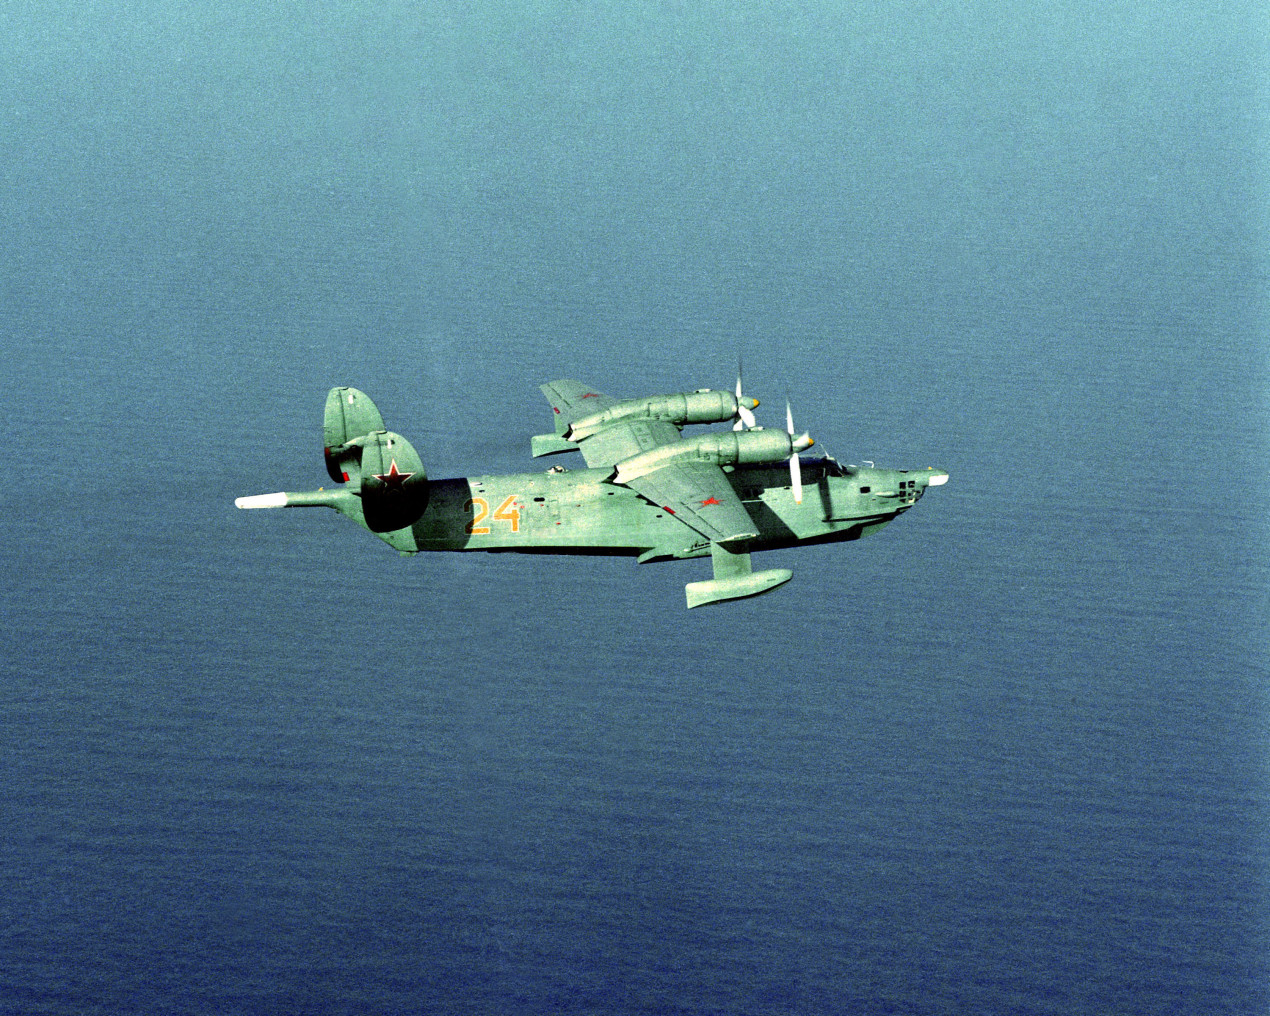 Бе-12 морской авиации ВМФ СССР,  1990 г. Возможно, такие гидросамолеты садились в бухте Броутона. Фото: Википедия